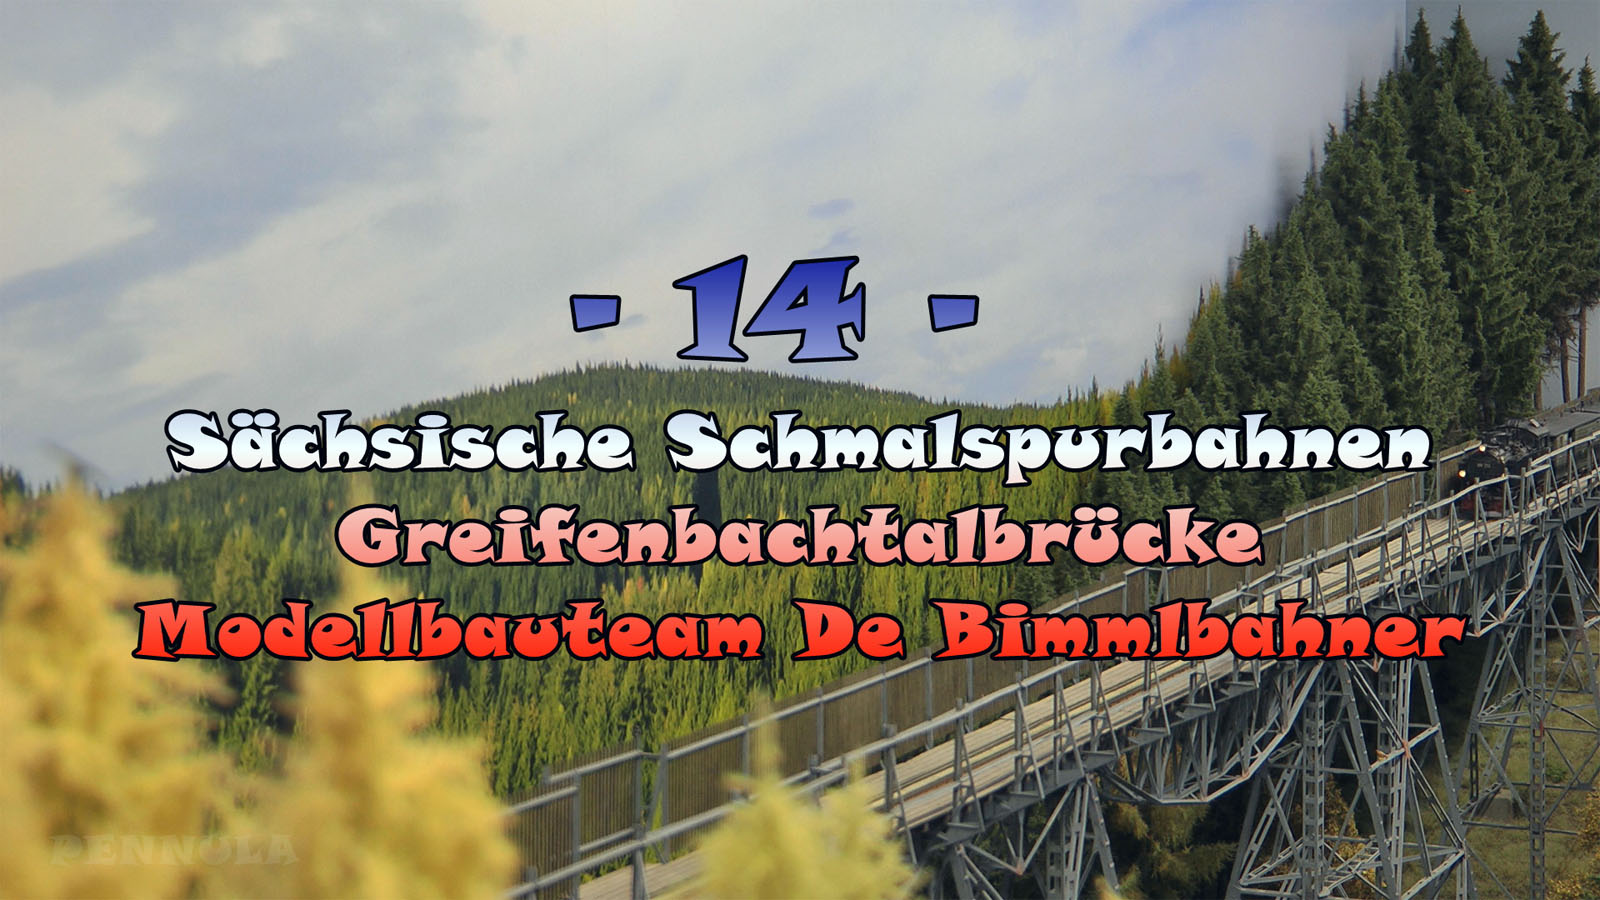 Die Greifenbachtalbrücke vom Modellbauteam De Bimmlbahner